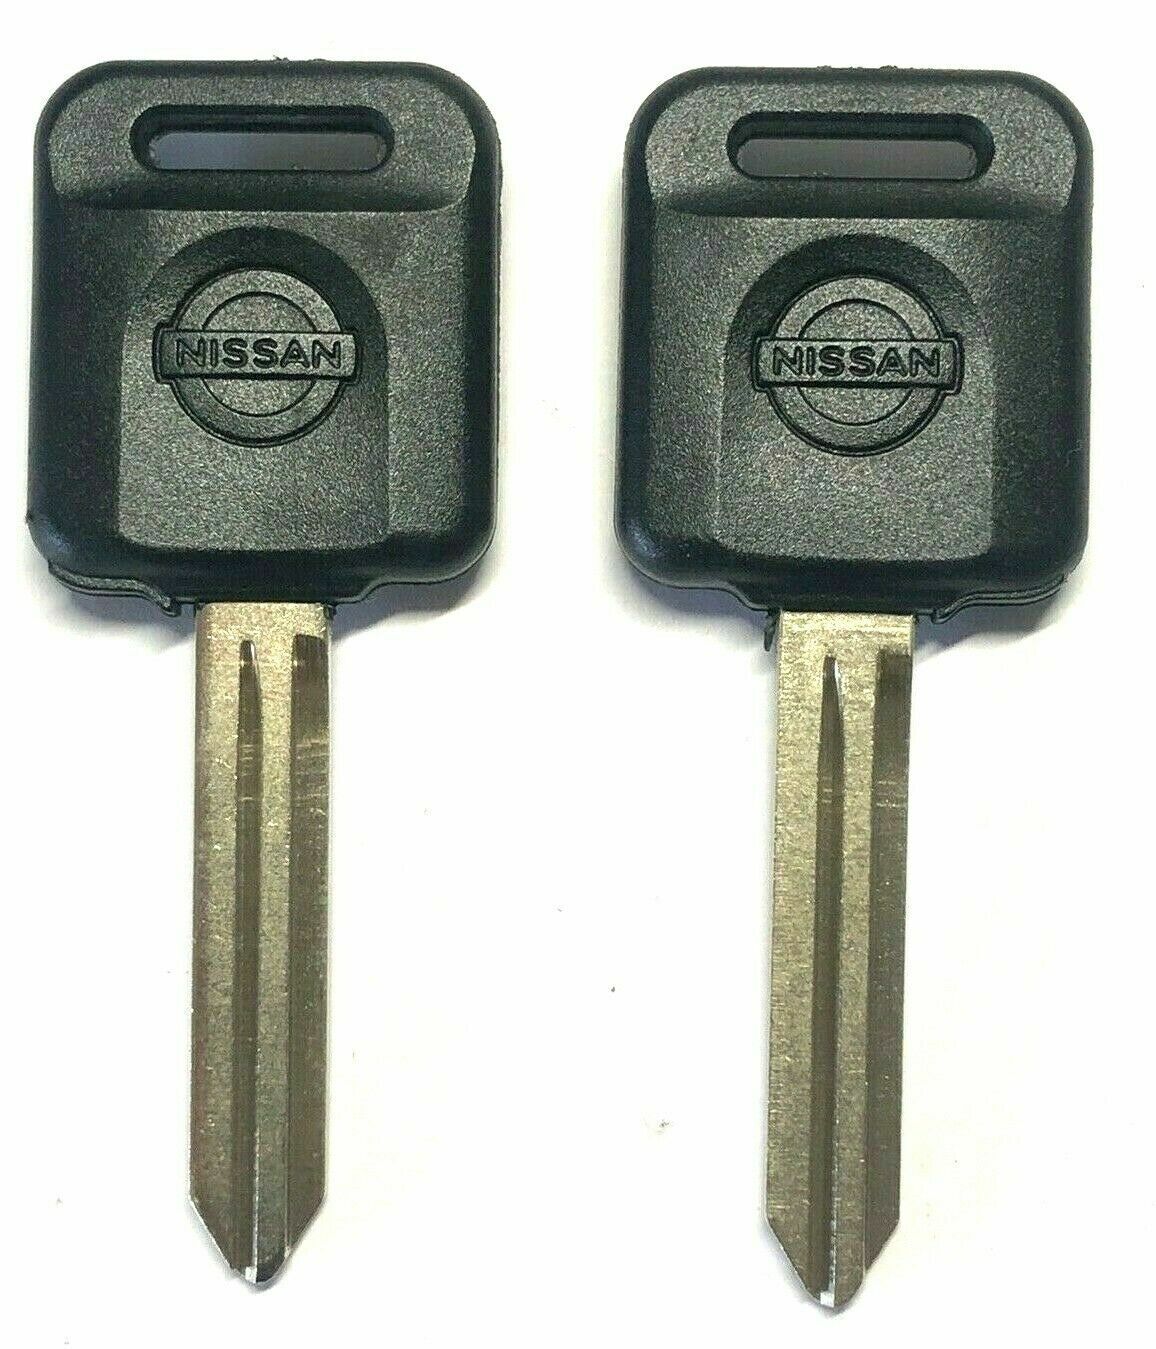  2004 2005 2006 Nissan  Altima Transponder Chip Key 46 chips N104